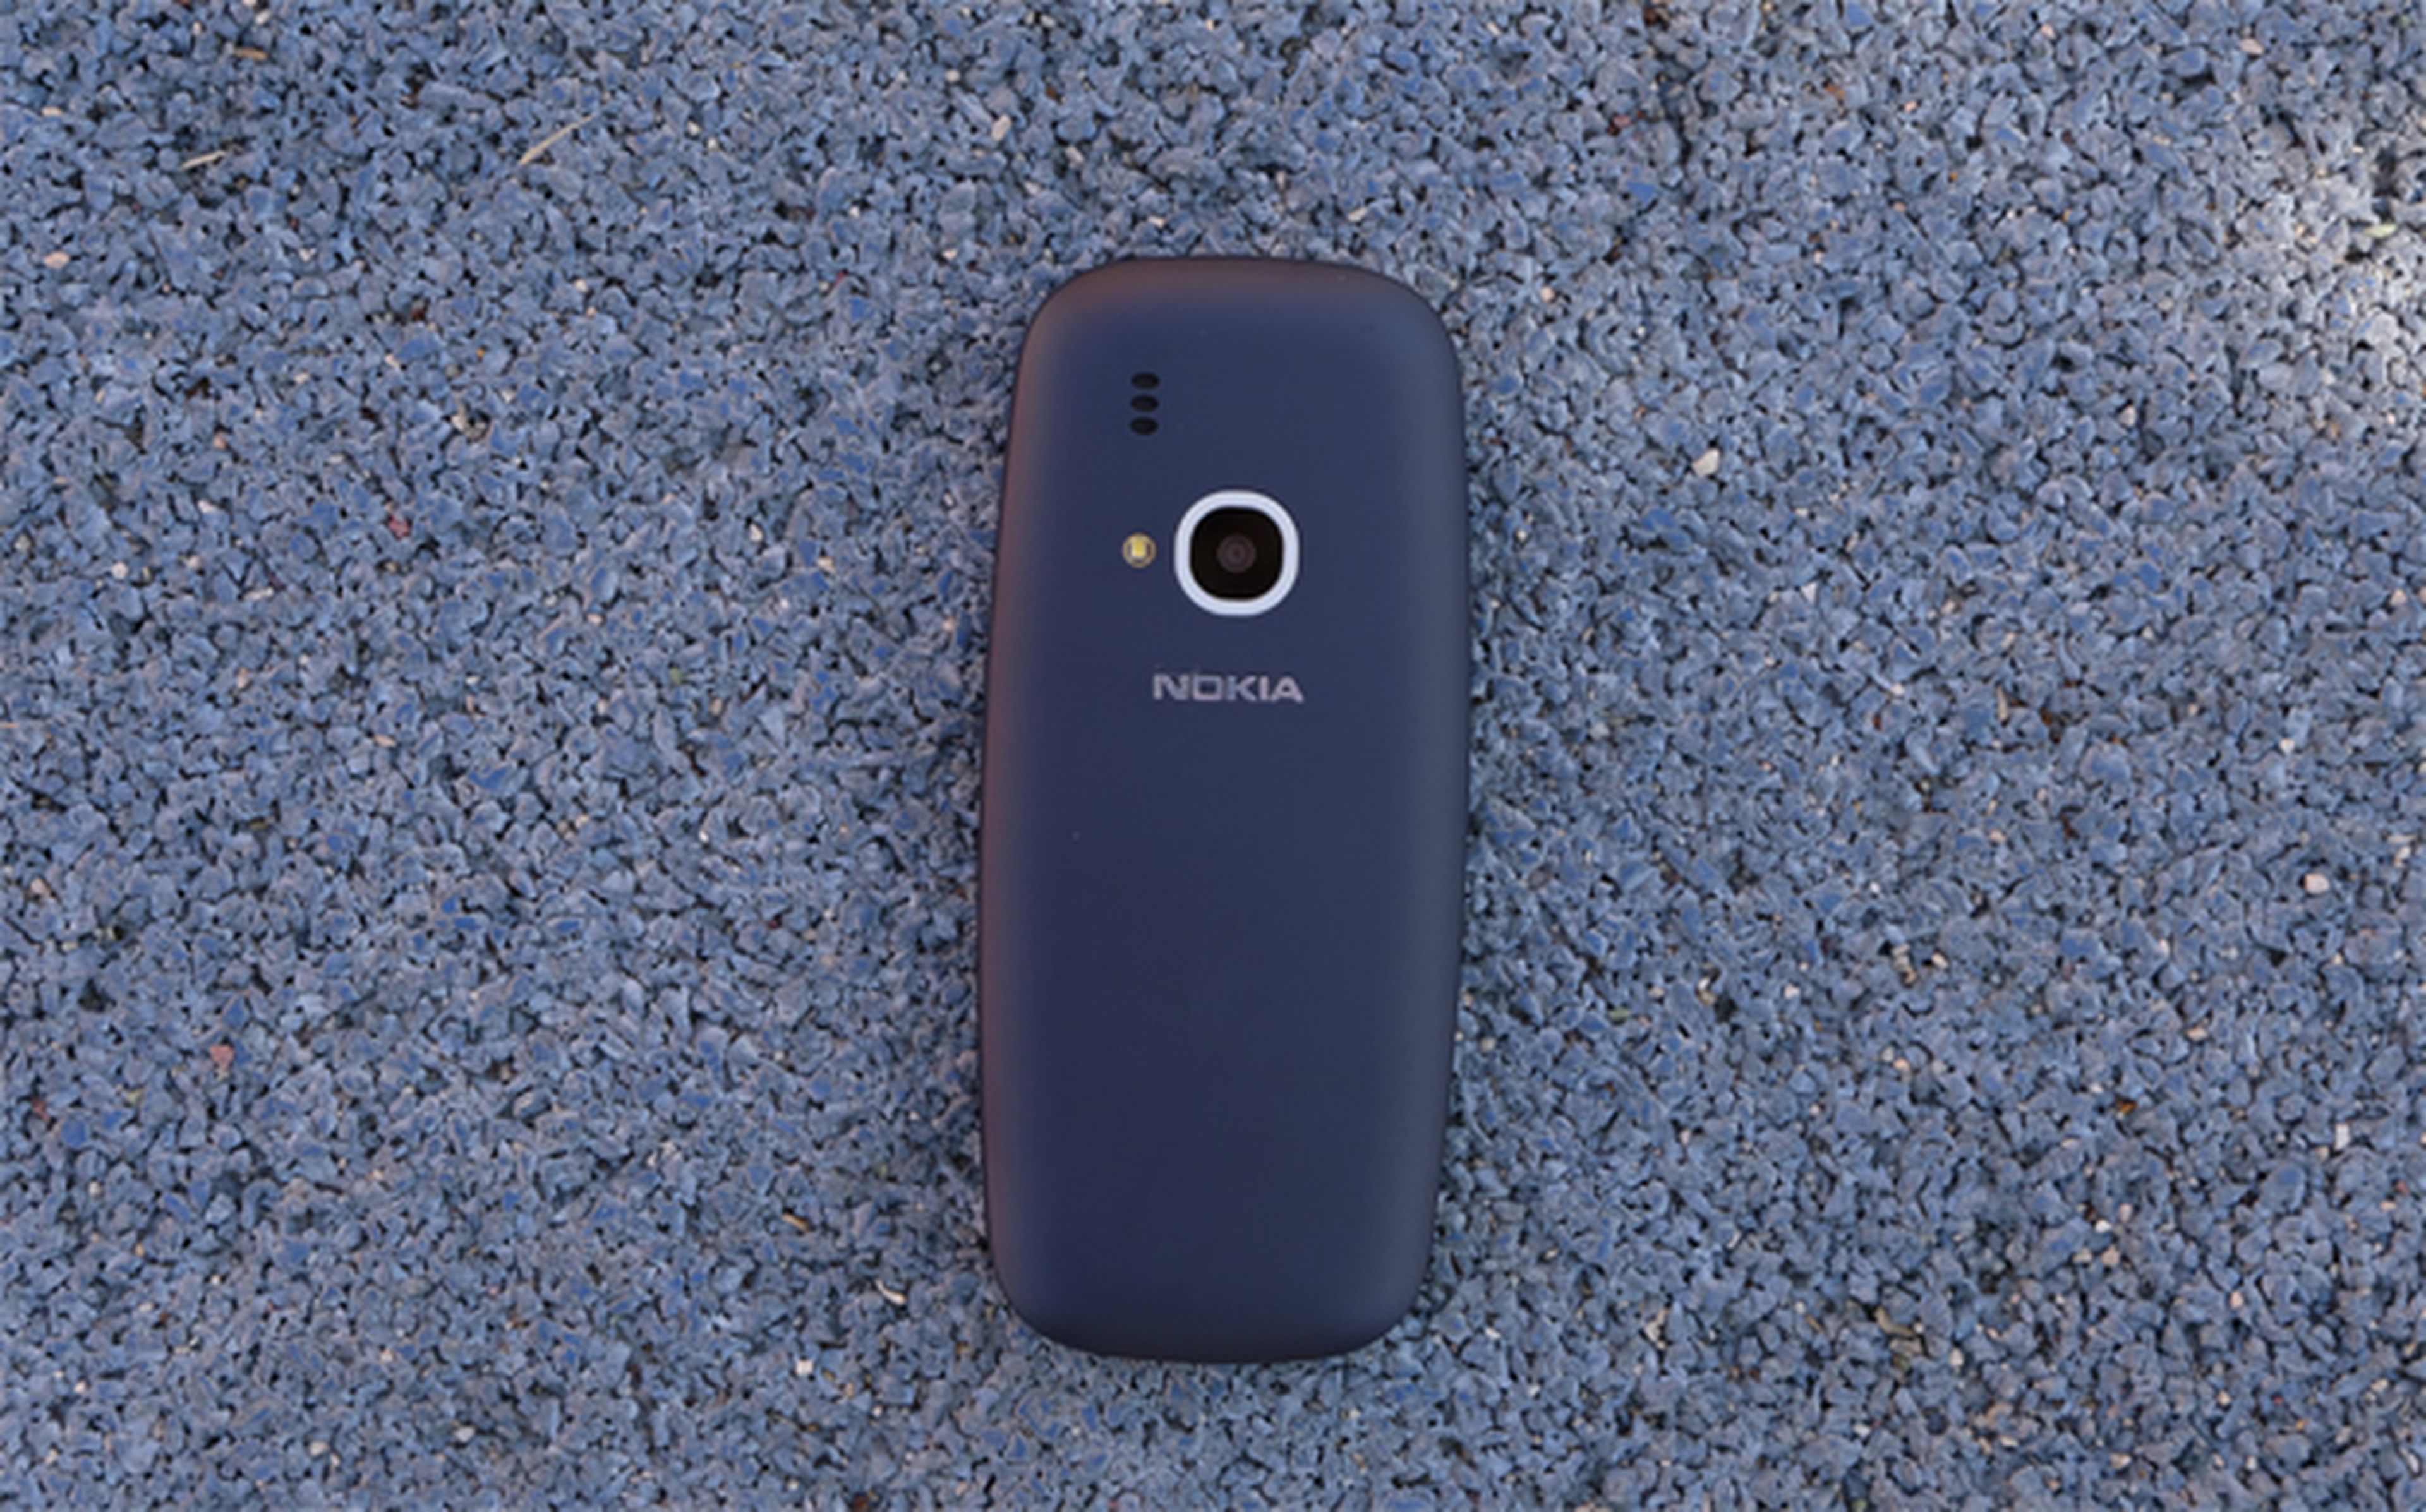 Empecemos por analizar el diseño del nuevo 3310 de Nokia